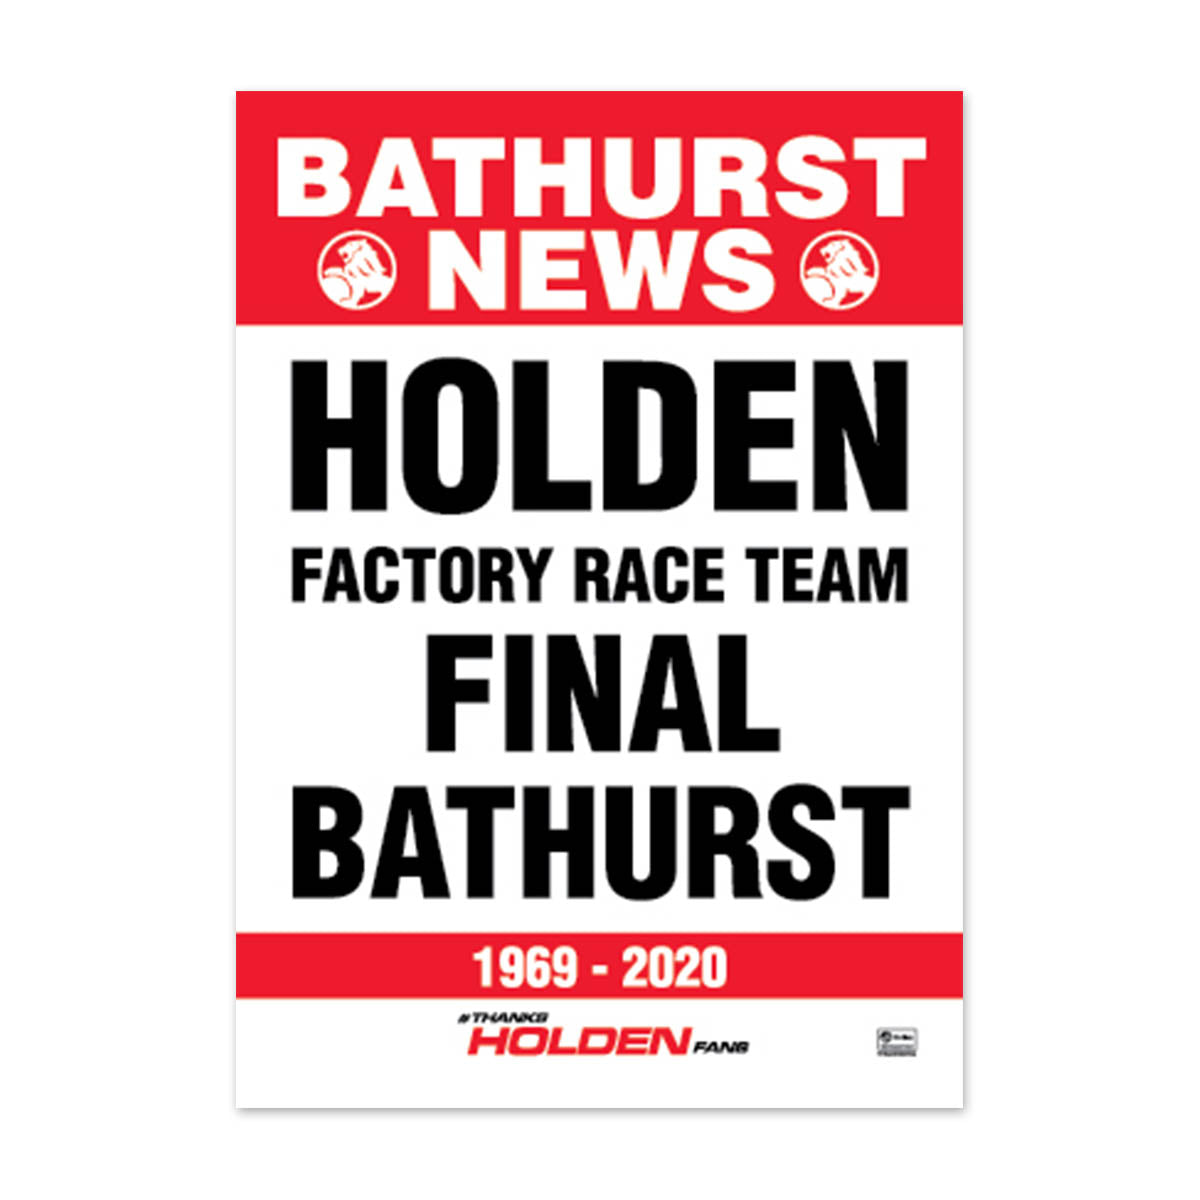 Holden ZB Commodore Red Bull Holden Racing Team - #97 van Gisbergen/ Tander - 2020 Bathurst 1000 Winner "Thanks Holden Fans"